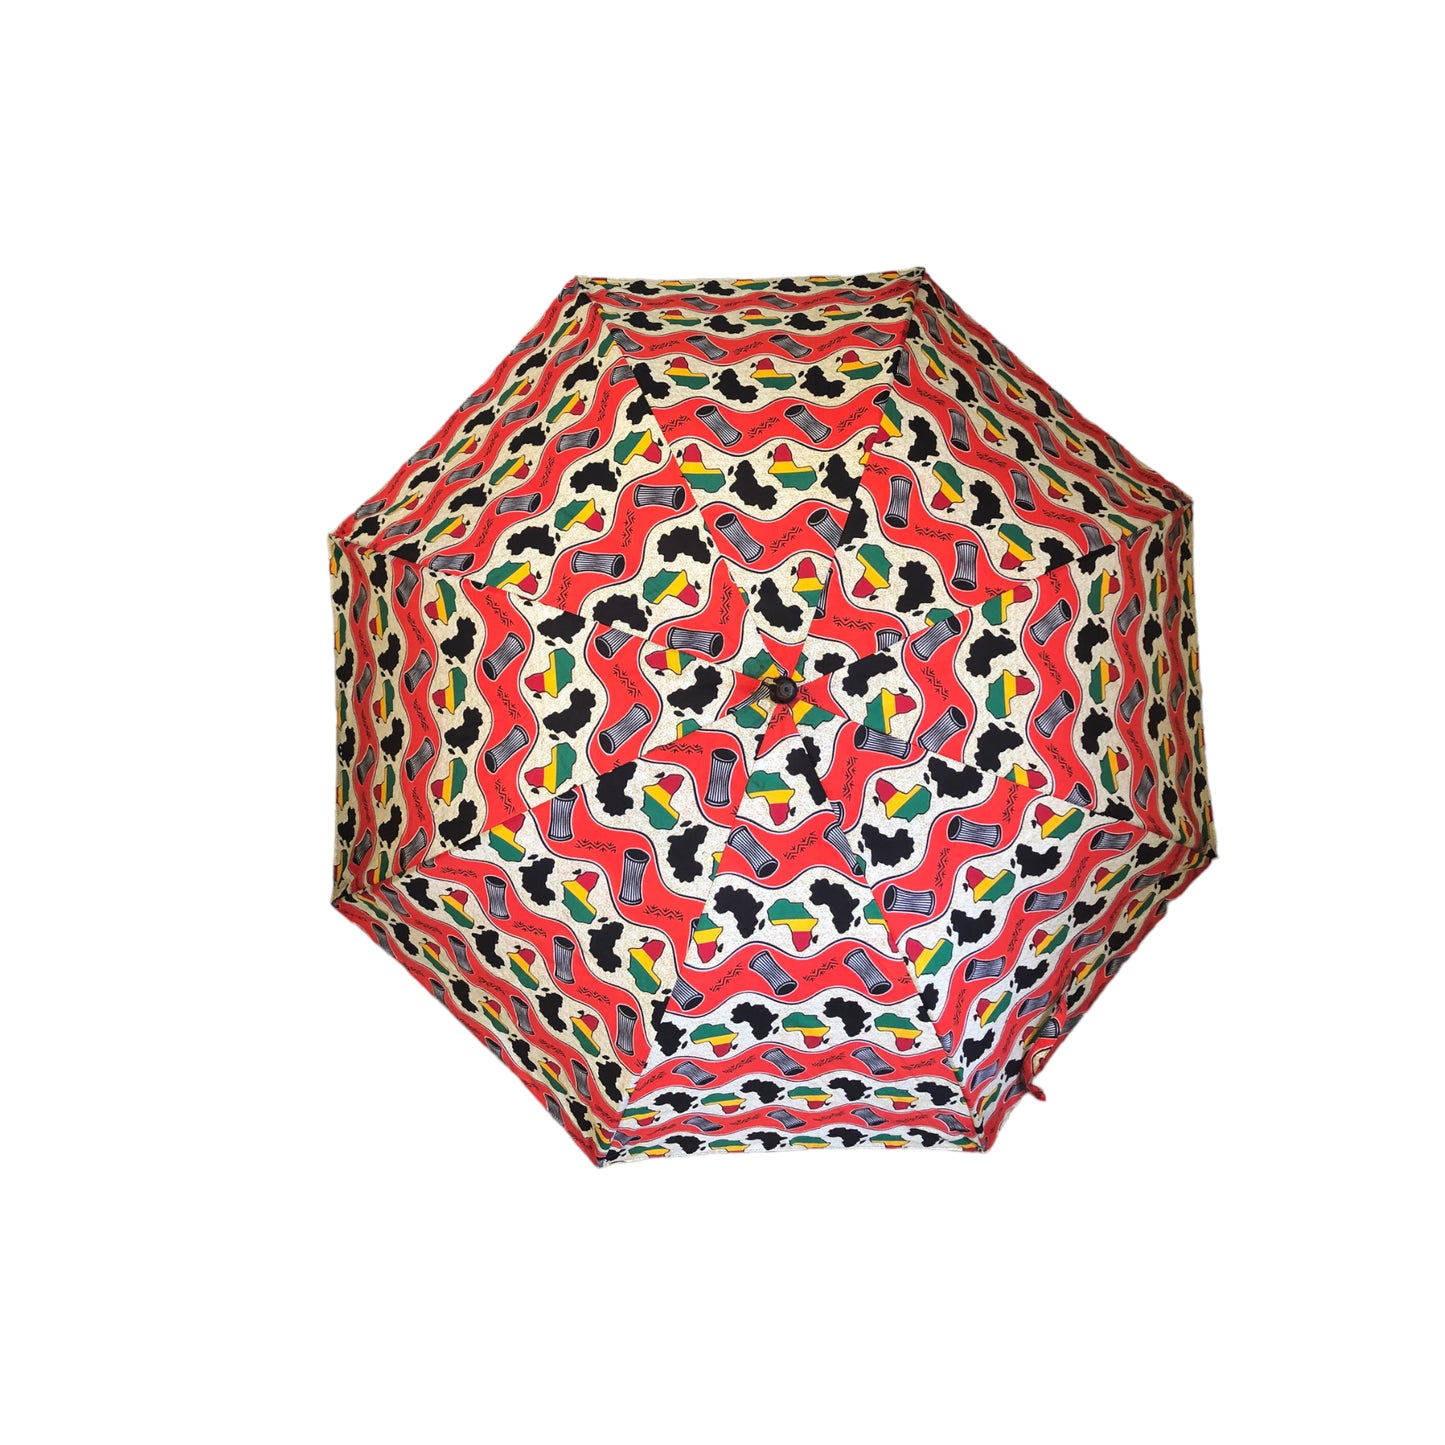 Ankara Umbrella's